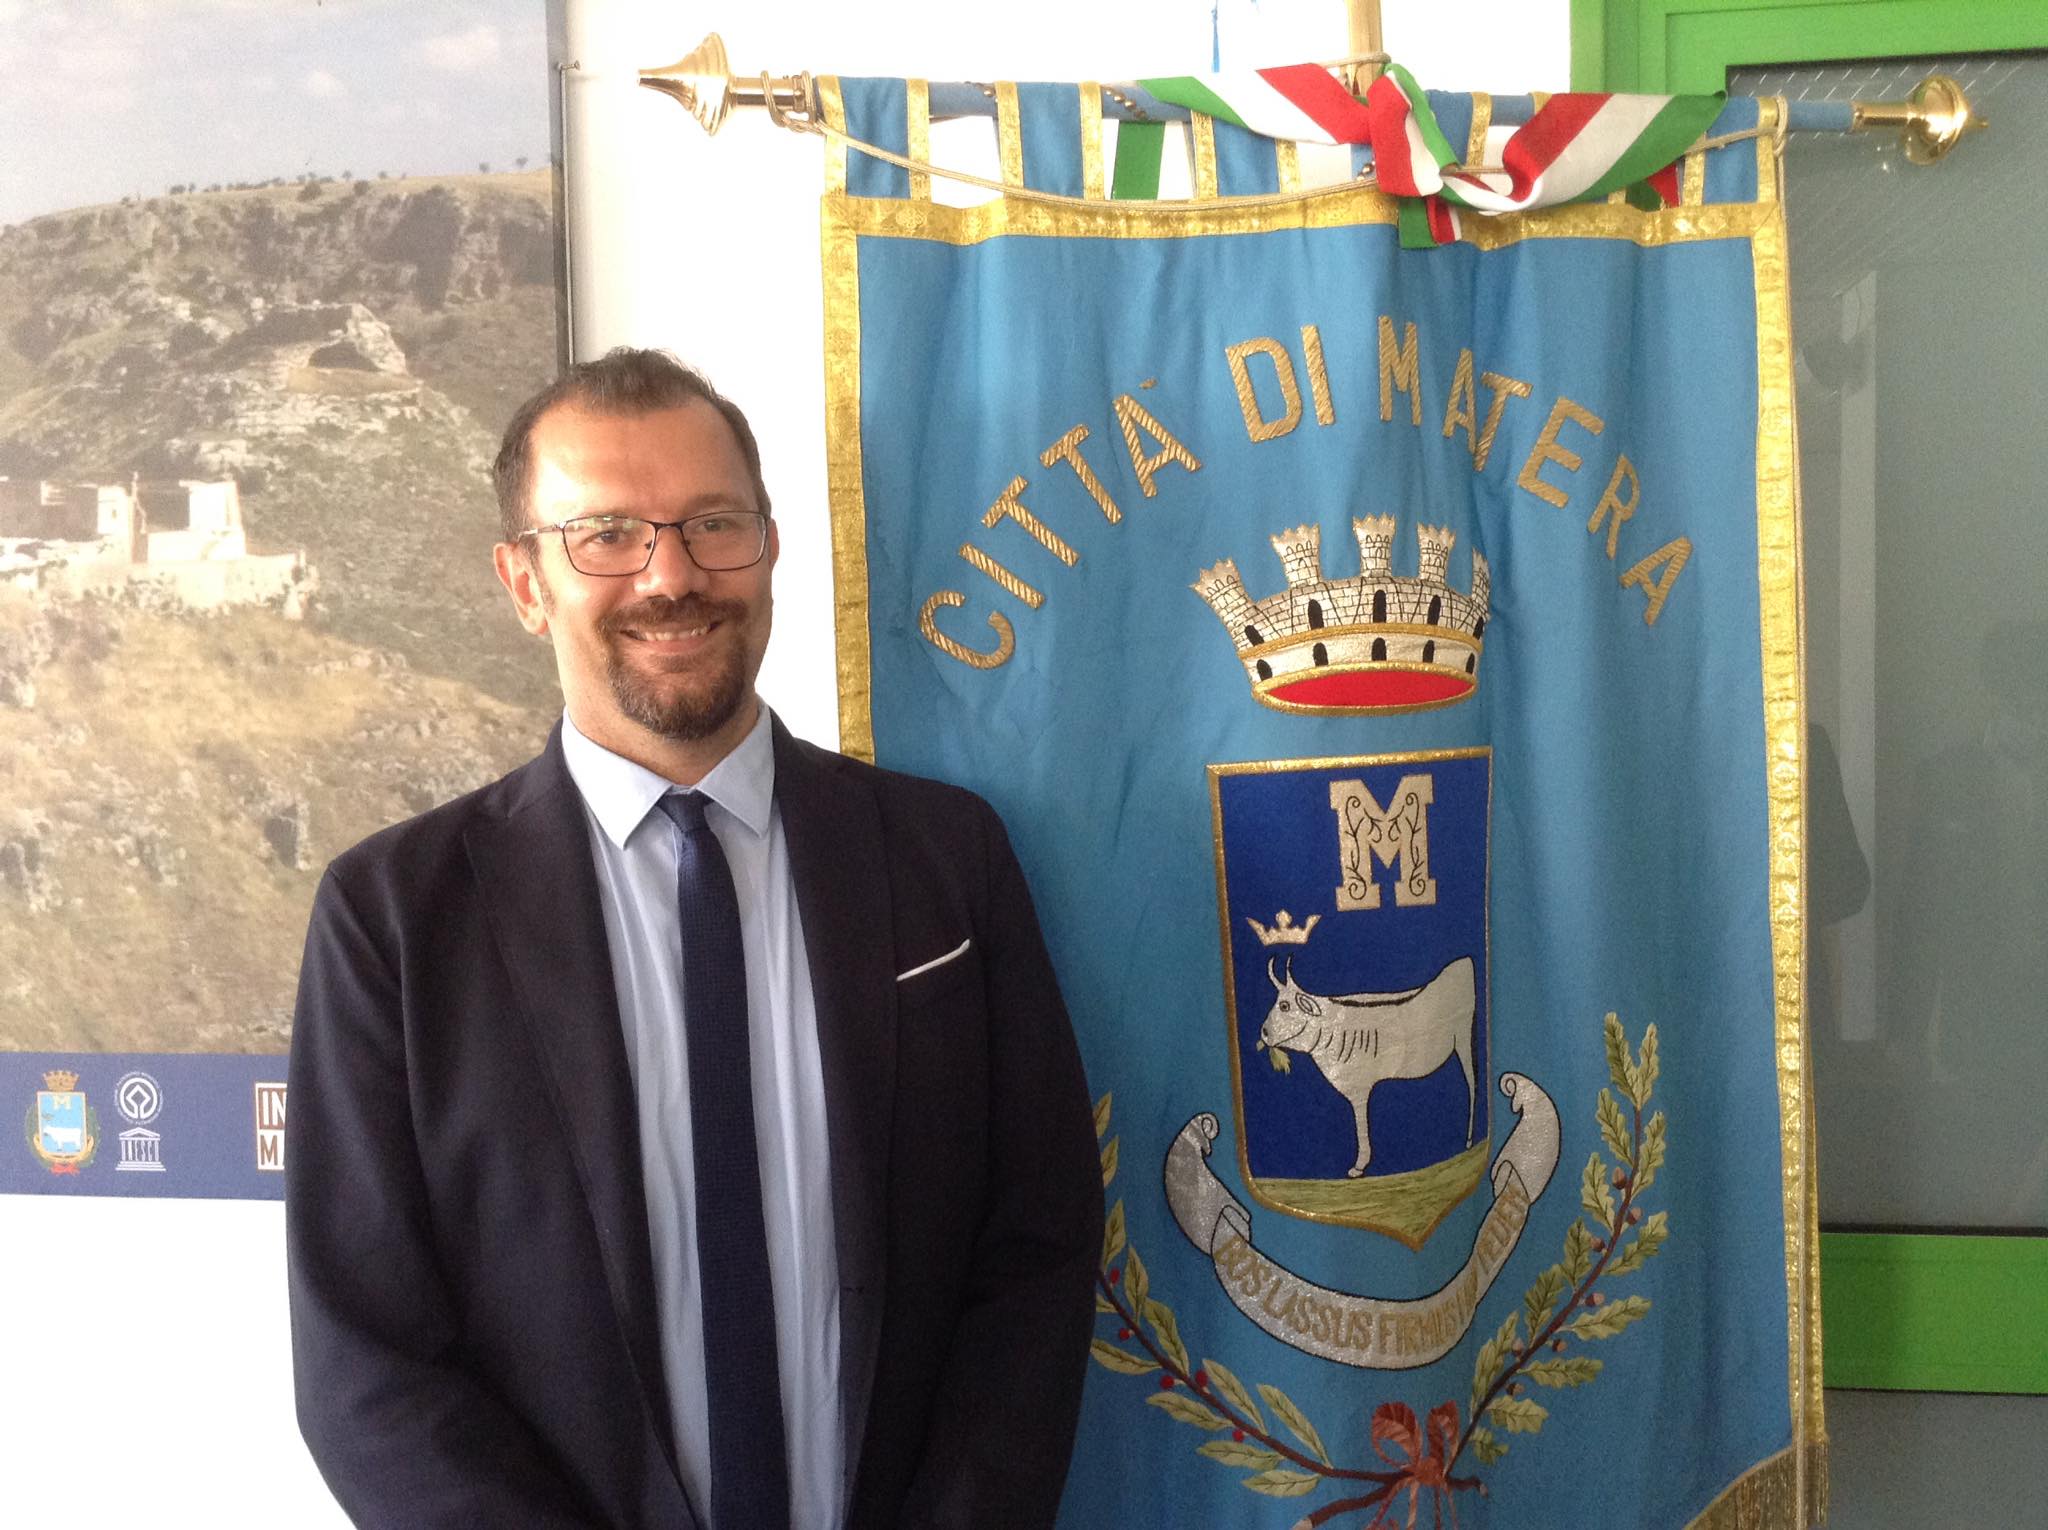 Il sindaco di Matera Bennardi e l’assessore Lomurno: “Strada Statale 7, ricostruiamone la storia per giungere a una proposta”